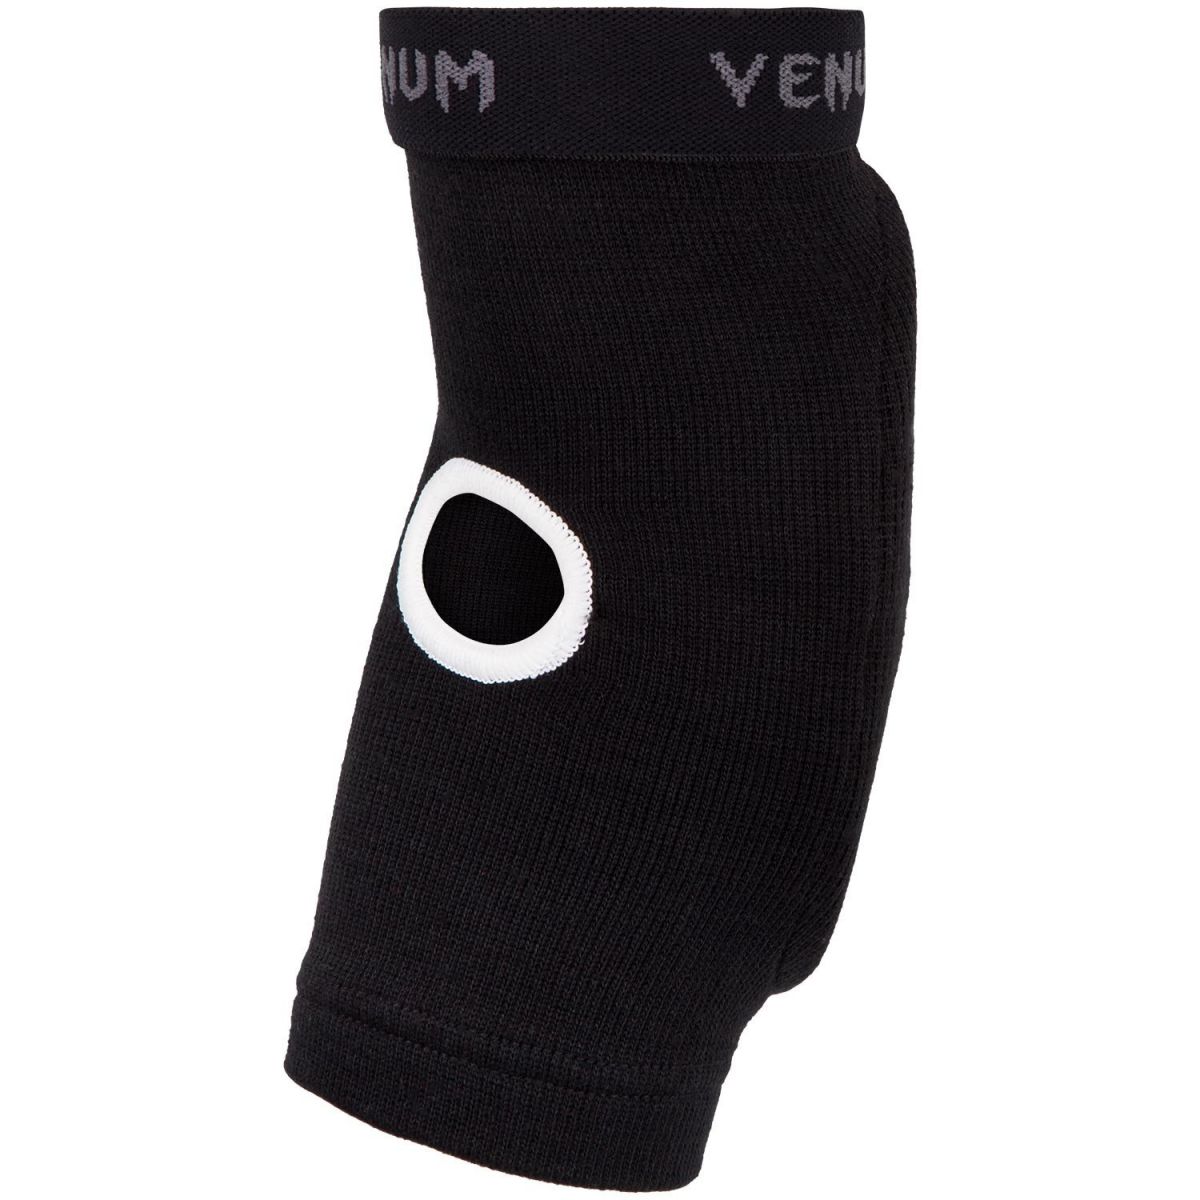 Защита на локоть Venum Kontact Elbow Protector Black (2 шт)-черный